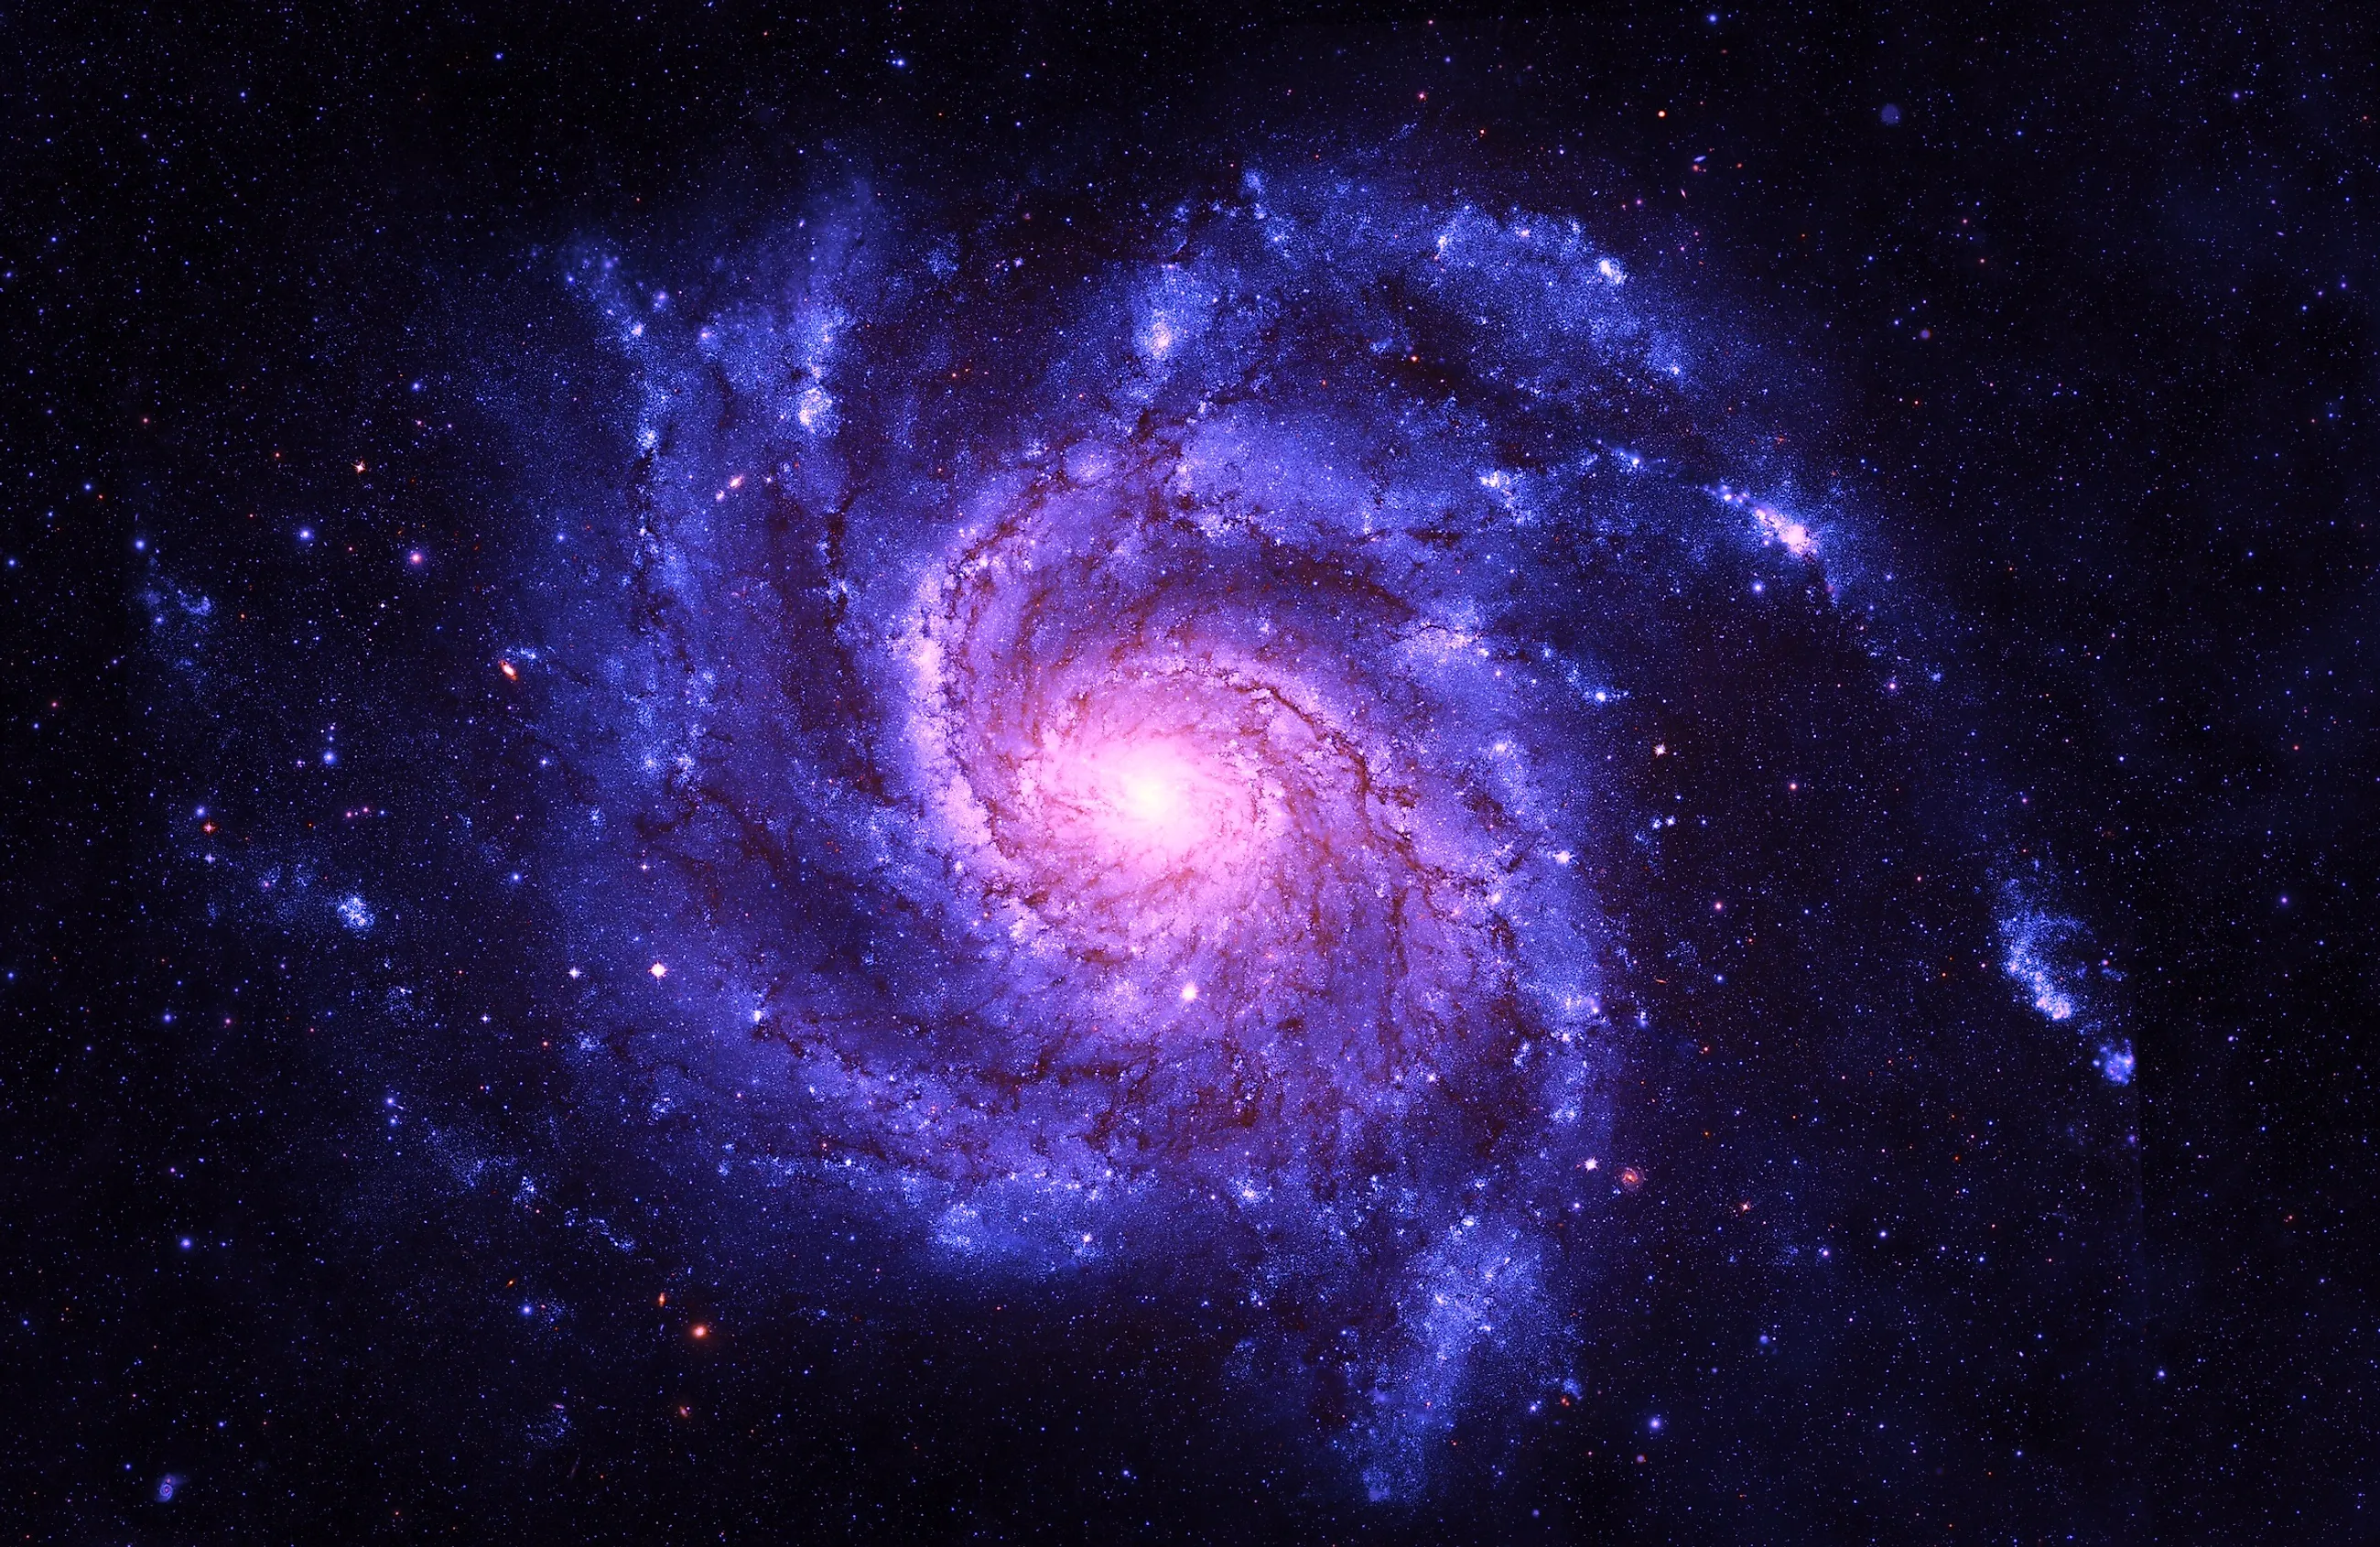 Ontdekking in sterrenstelsel NGC 4383: Explosies werpen een gasstroom 20.000 lichtjaar verderop uit